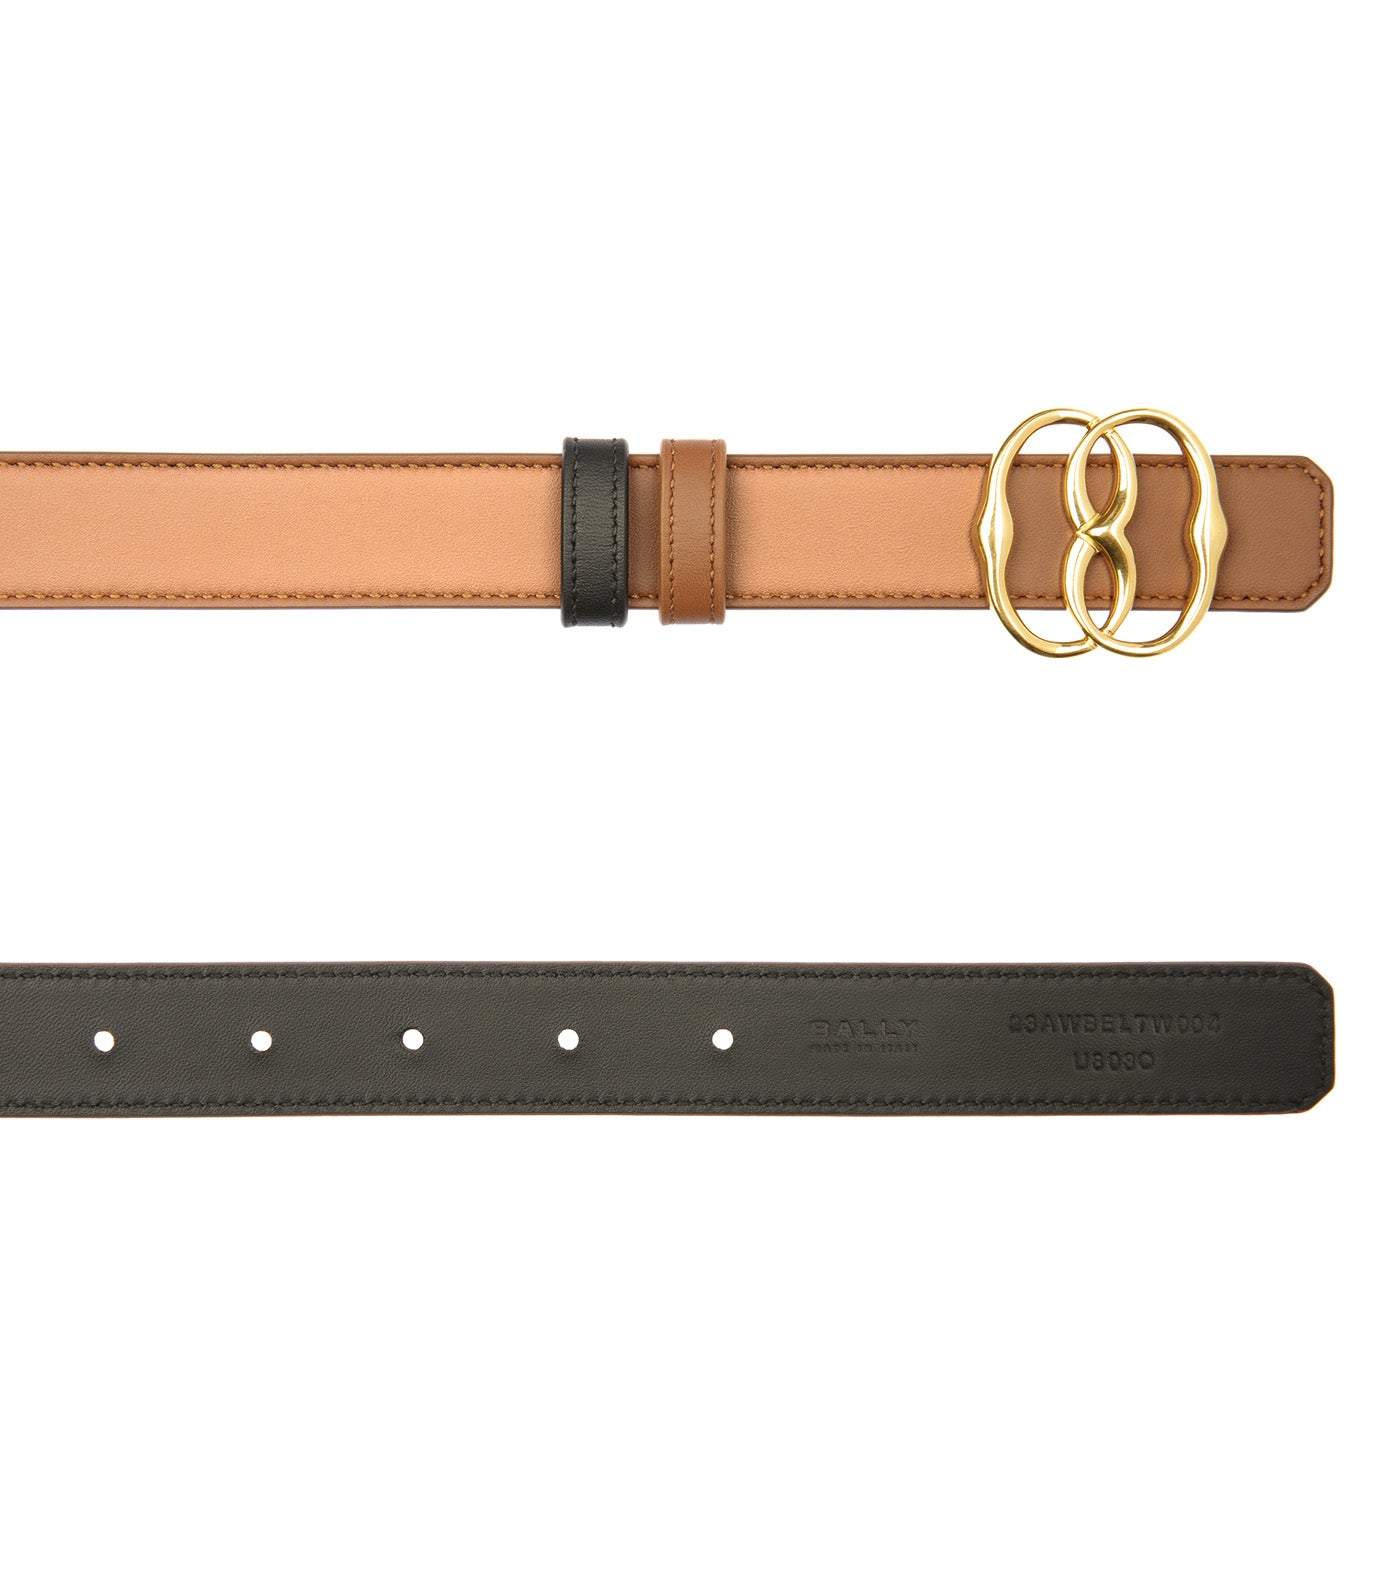 Emblem 25mm Leather Belt Brown